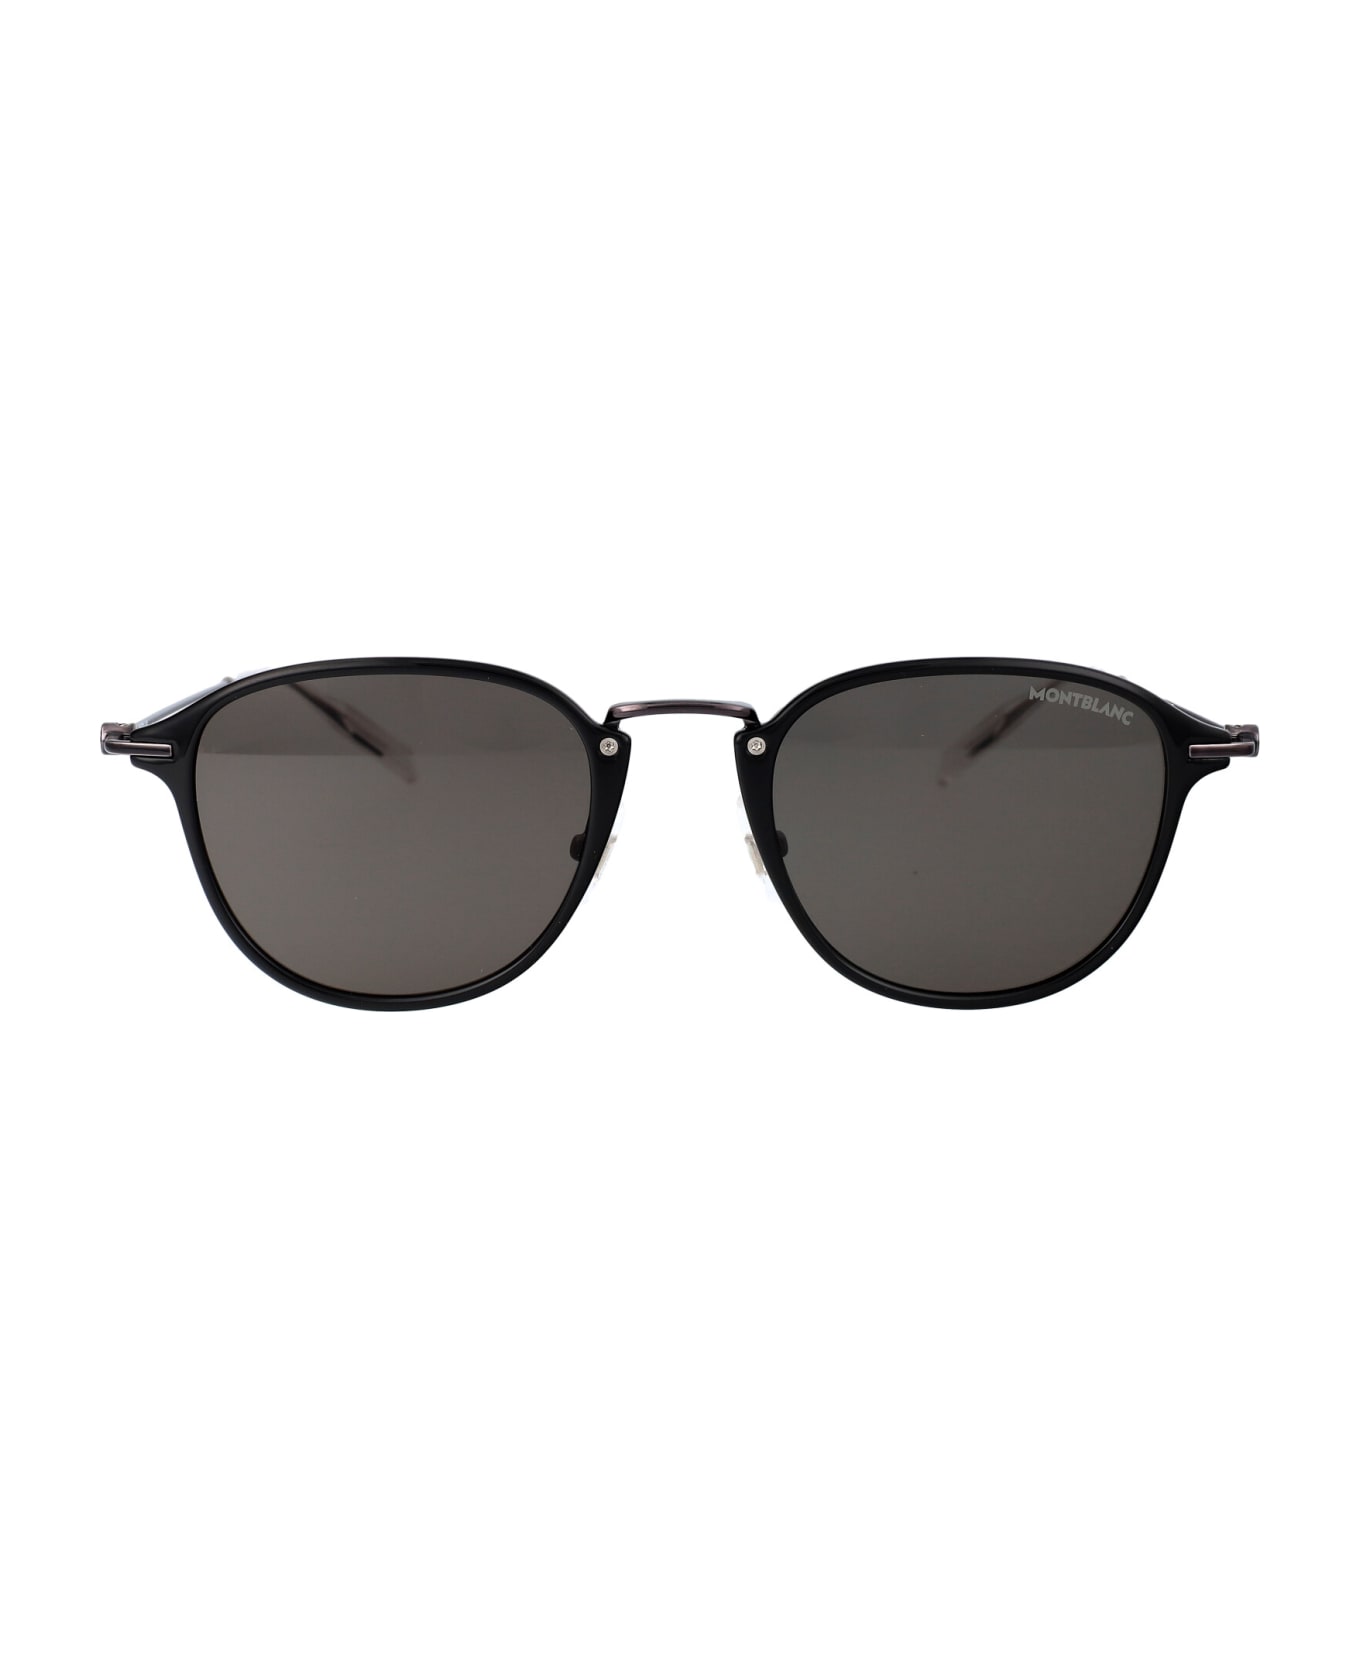 Montblanc Mb0155s Sunglasses - 008 BLACK RUTHENIUM GREY